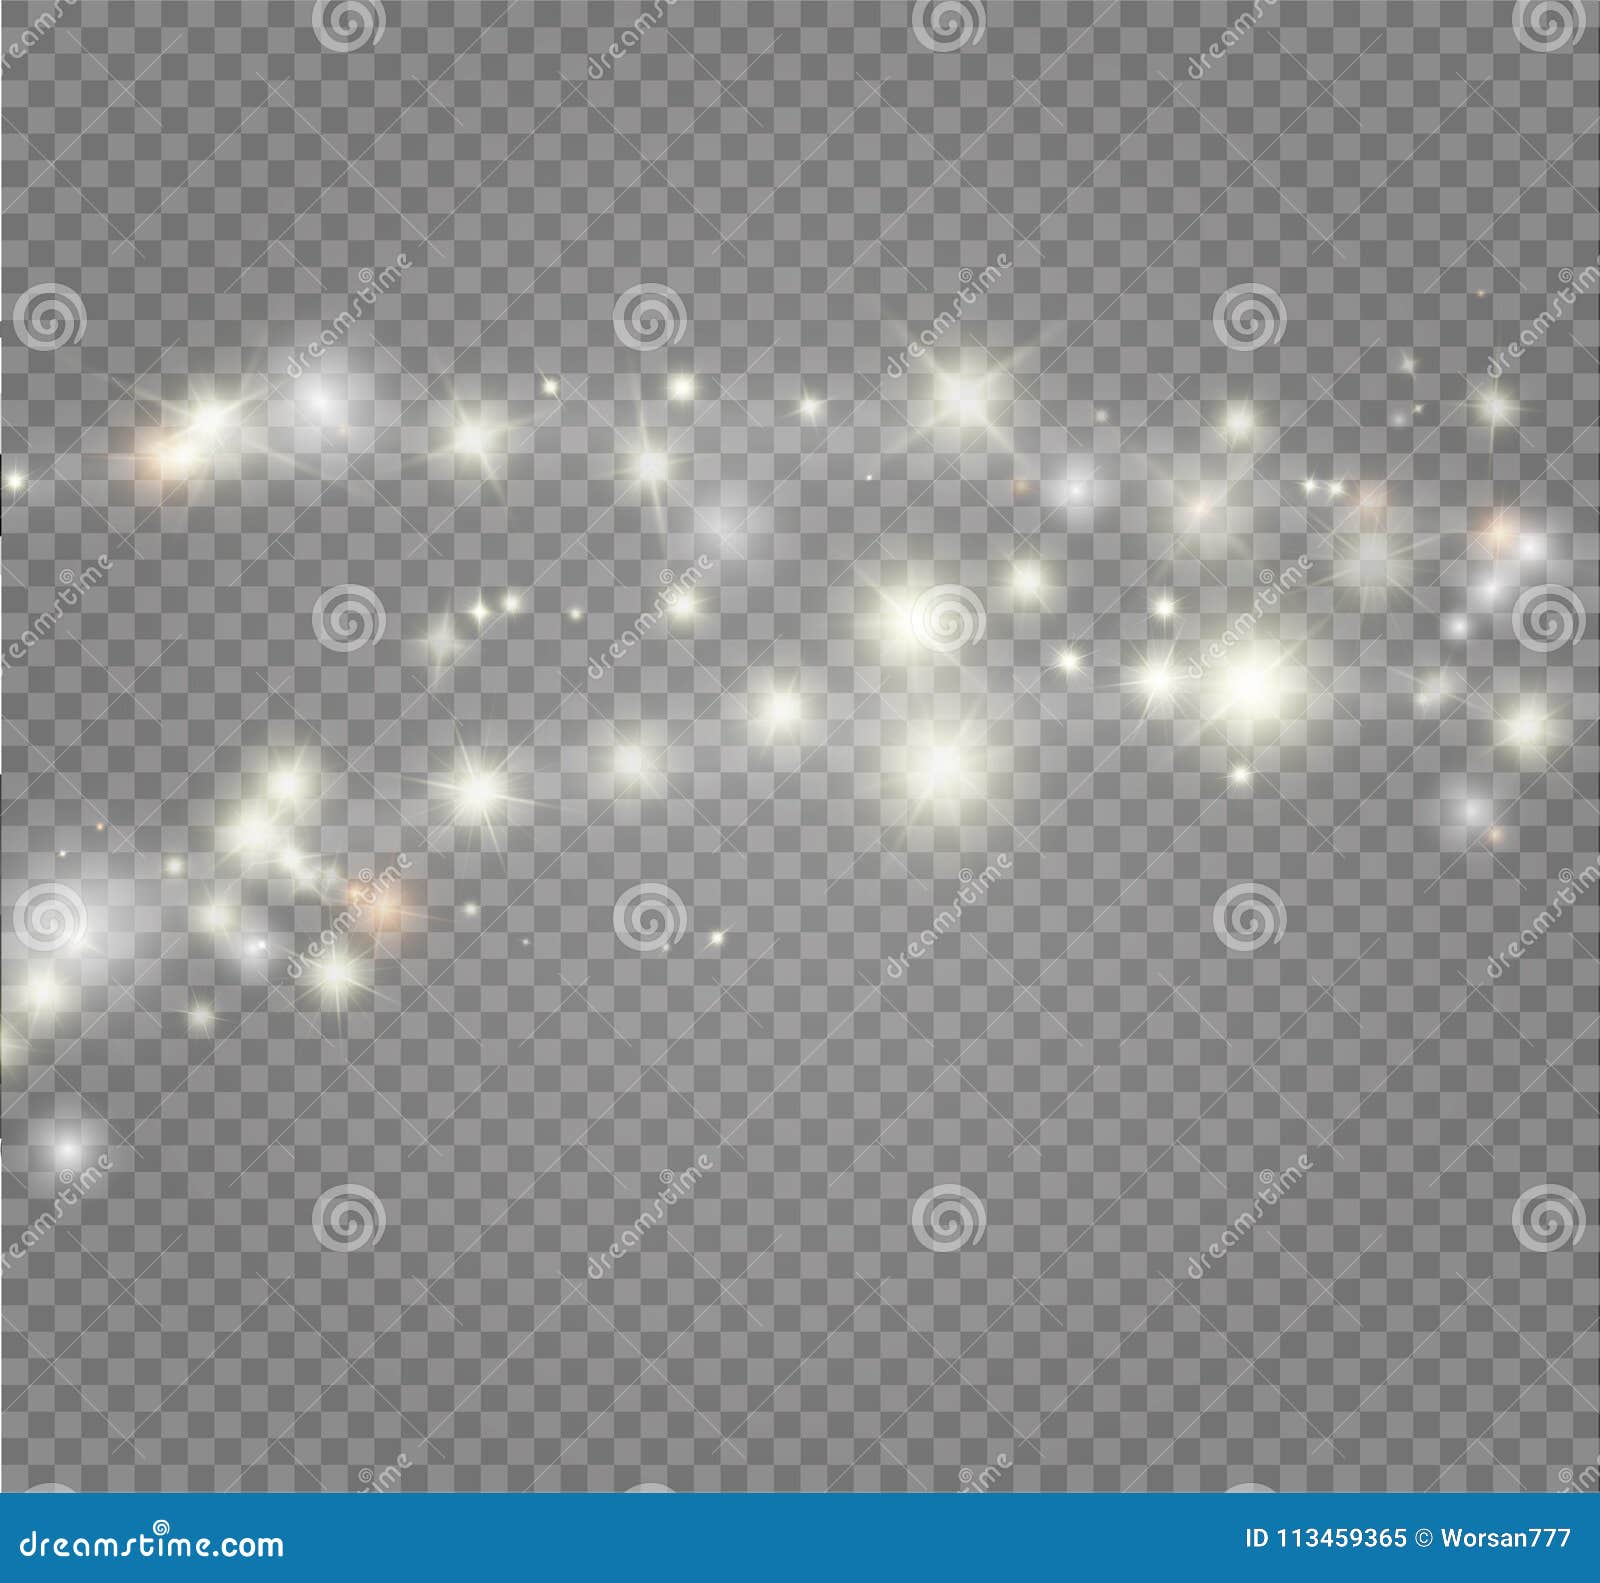 Stardust biała błyskotliwość Błyska rozjarzonych stardust Magicznych iskrzastych cząsteczek lekkiego skutek Wektorowa ilustracja dalej z przejrzystym tłem